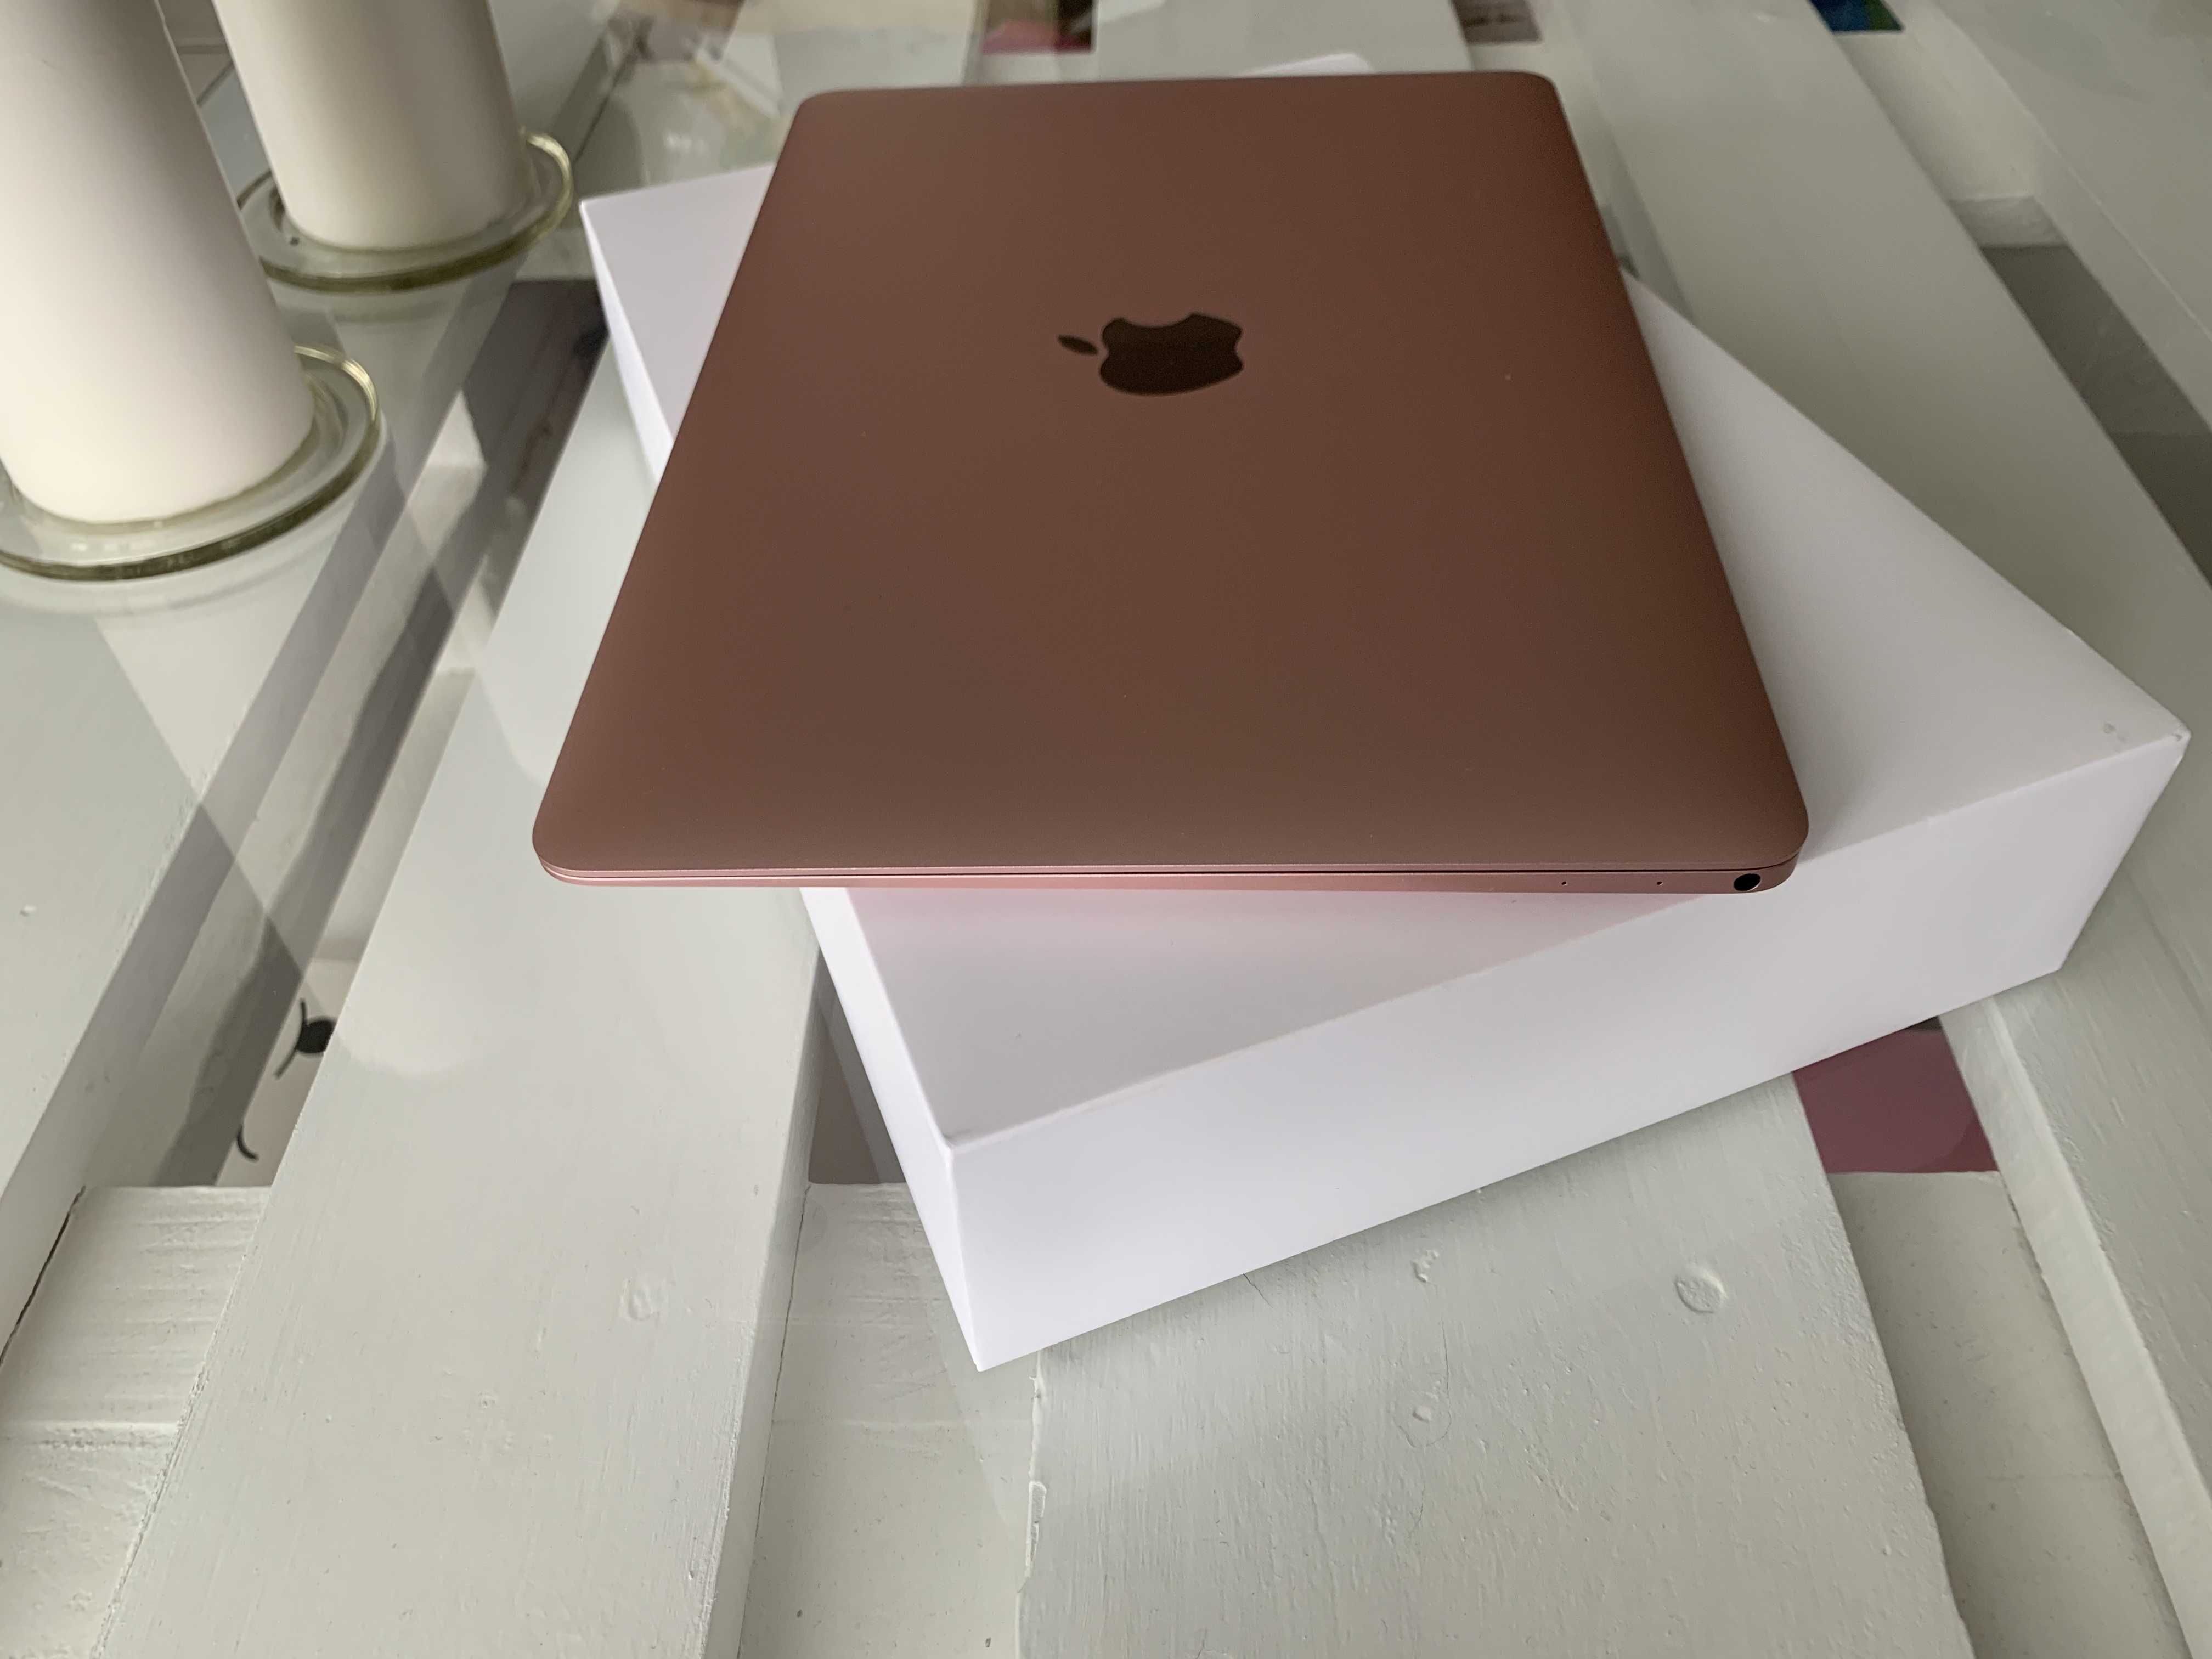 venta macbook 12 pulgadas 256gb color rosa | venta segunda mano apple